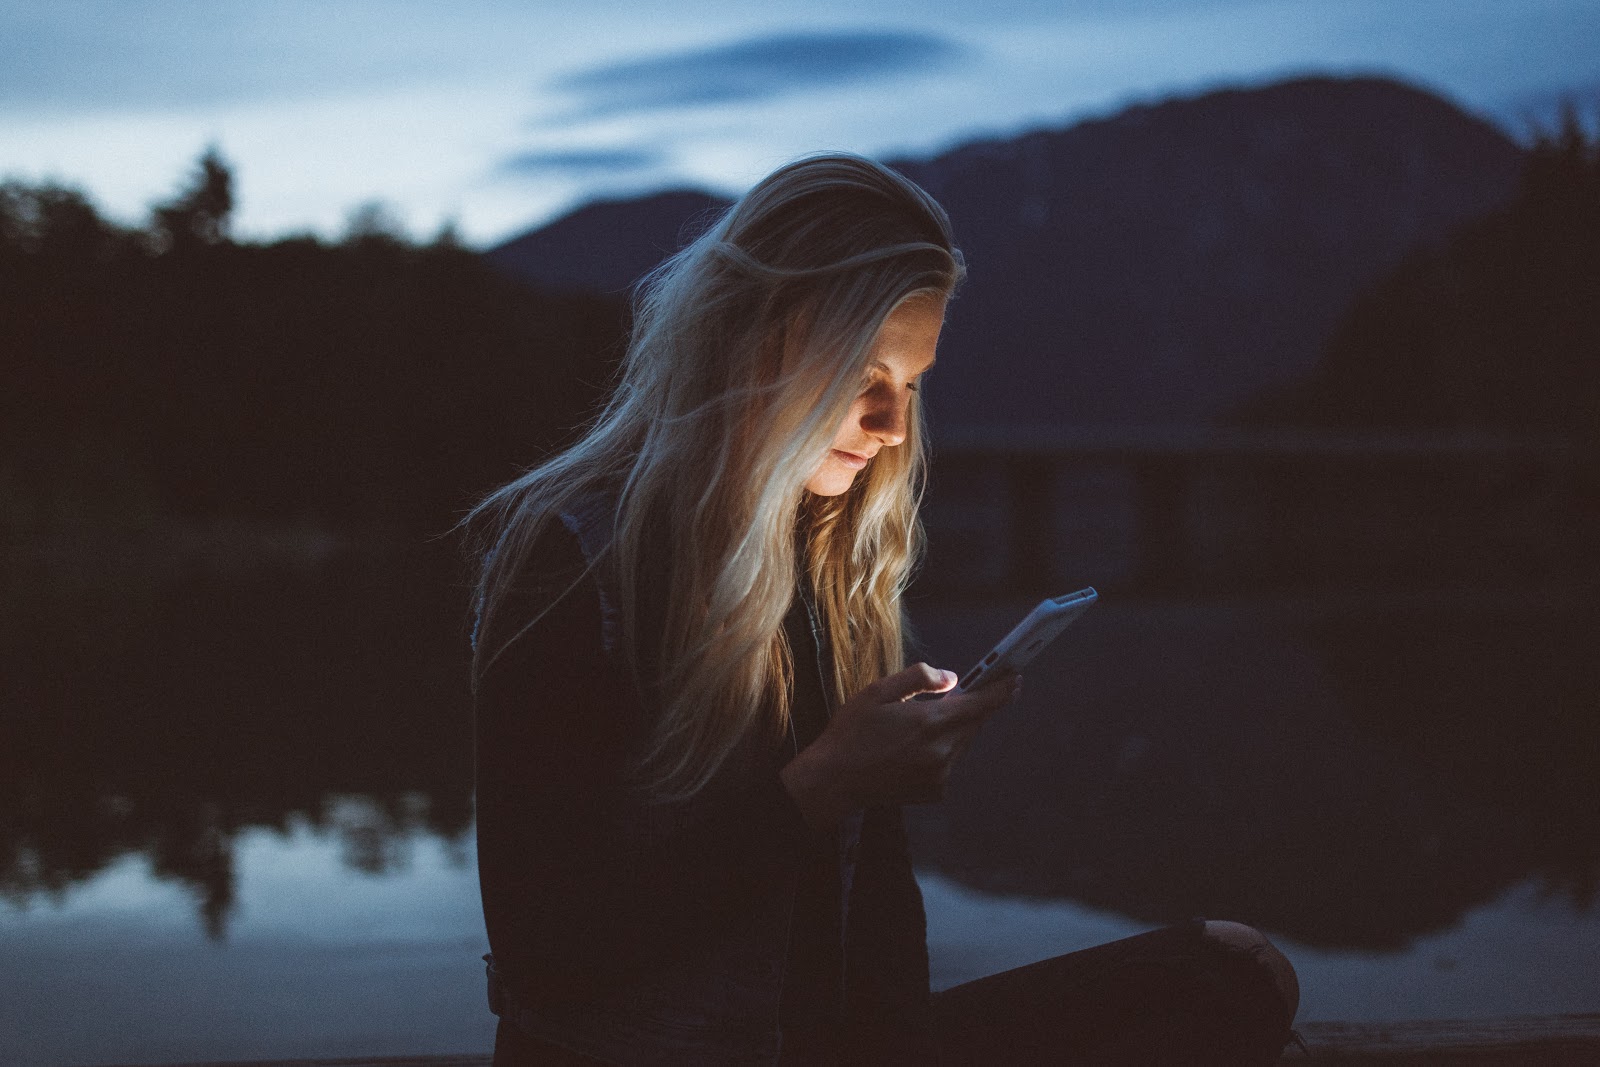 girl staring at phone outside at dusk